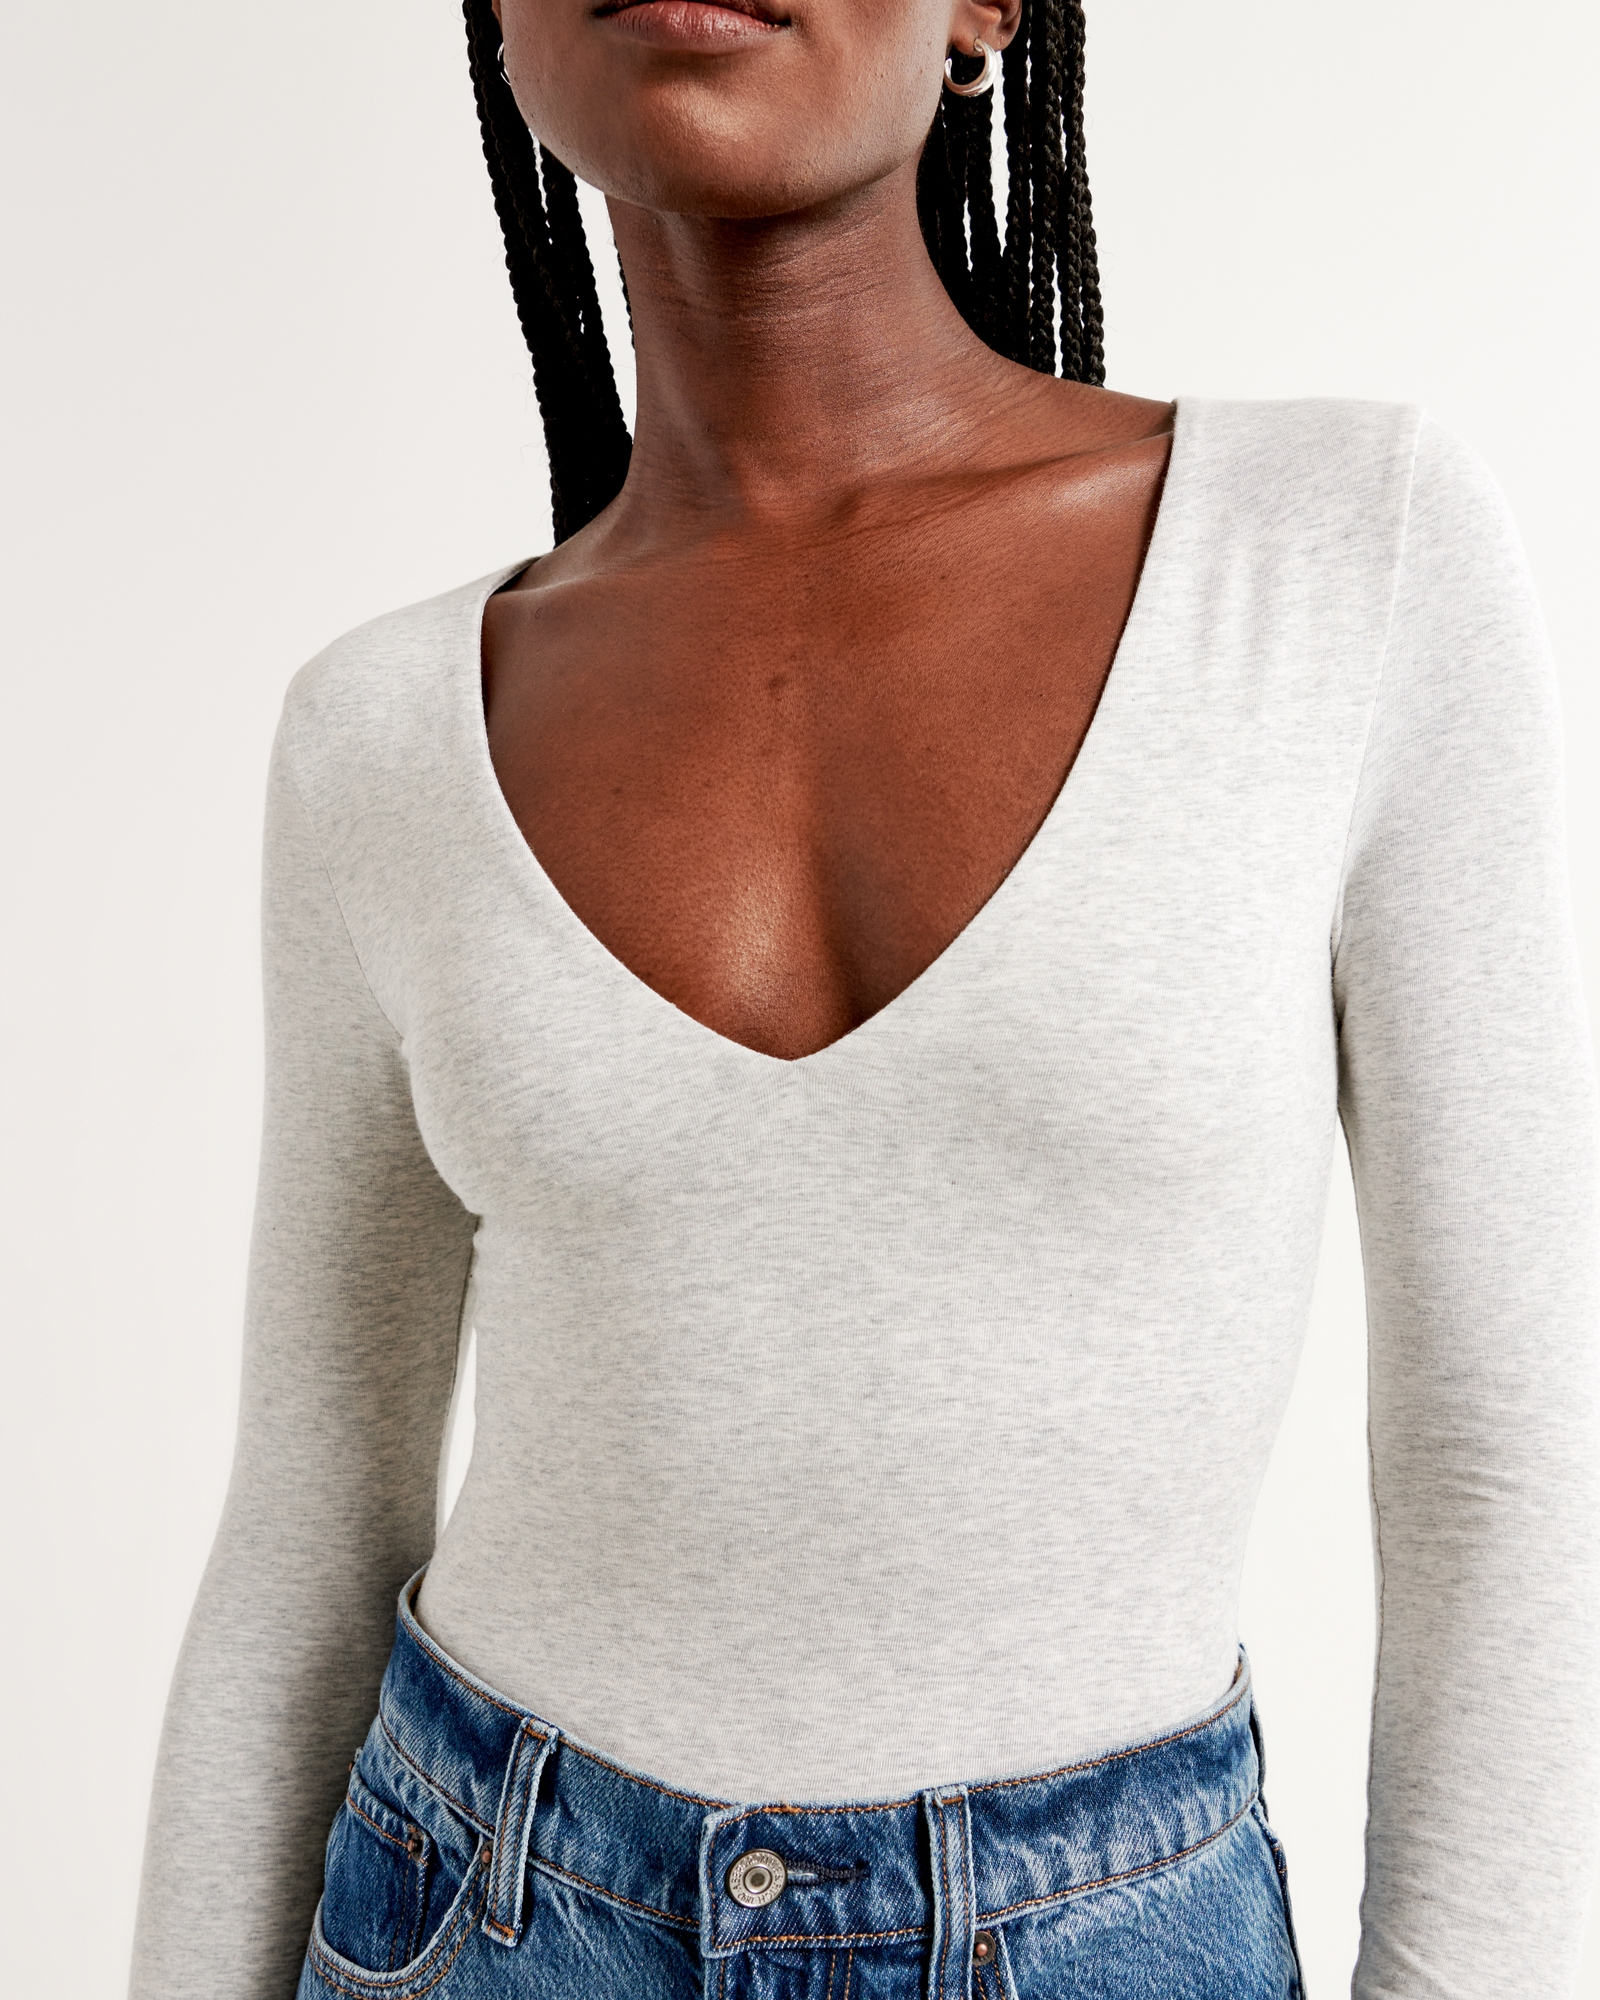 Wholesale Women's Deep V Neck Long Sleeve Cotton Spandex Bodysuits